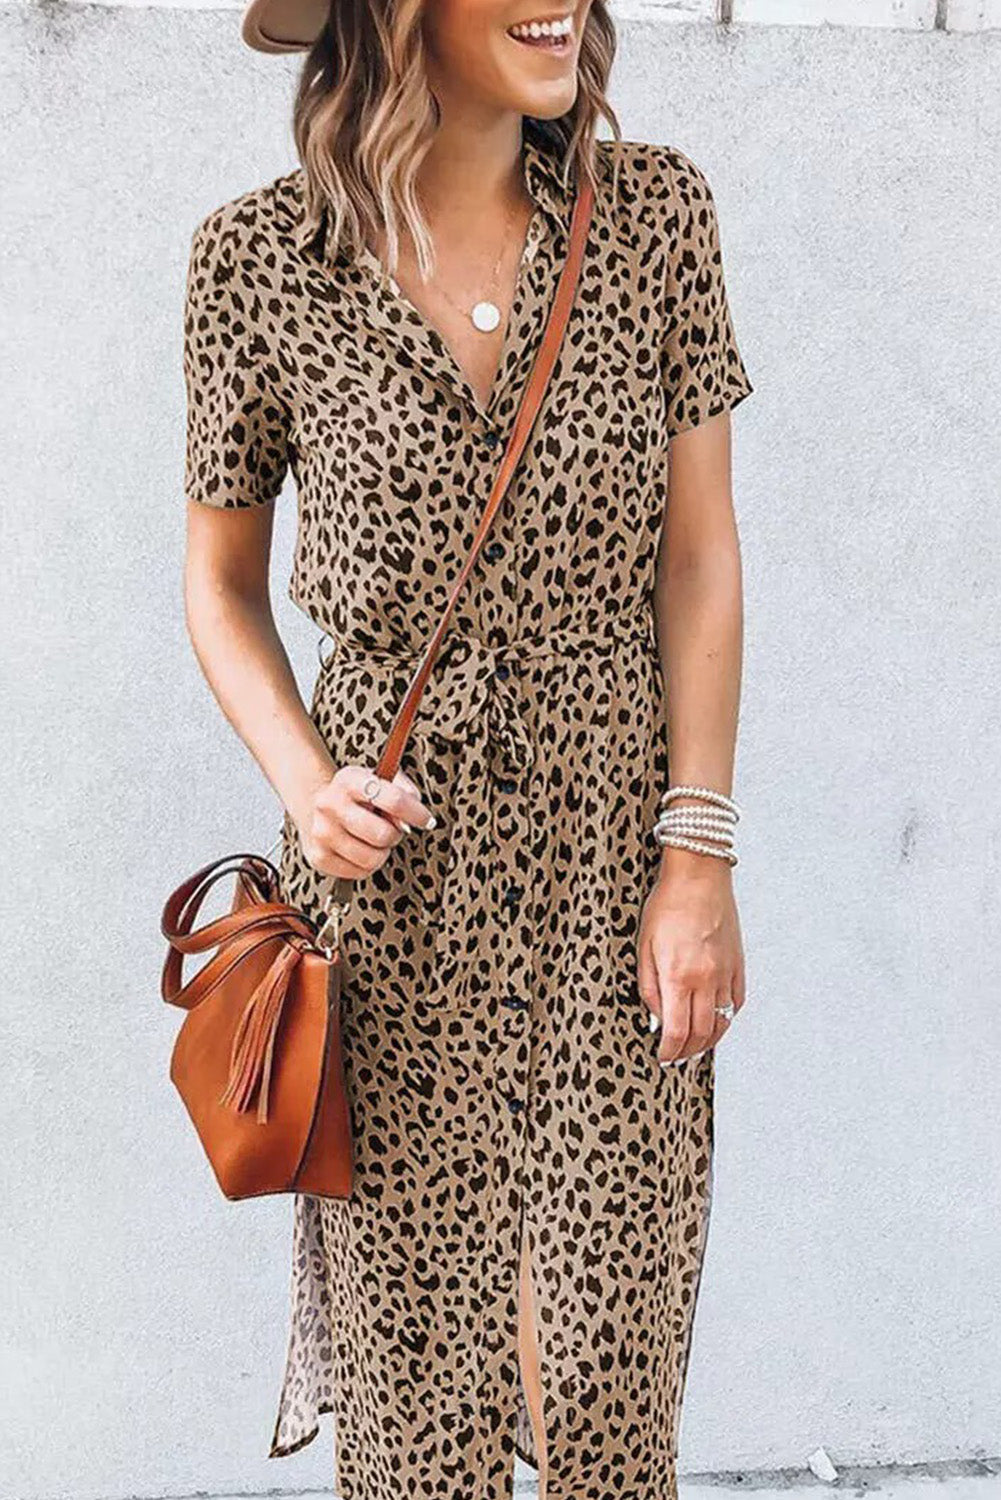 Khaki Leopard Turn-Down Collar Slit Midi Dress